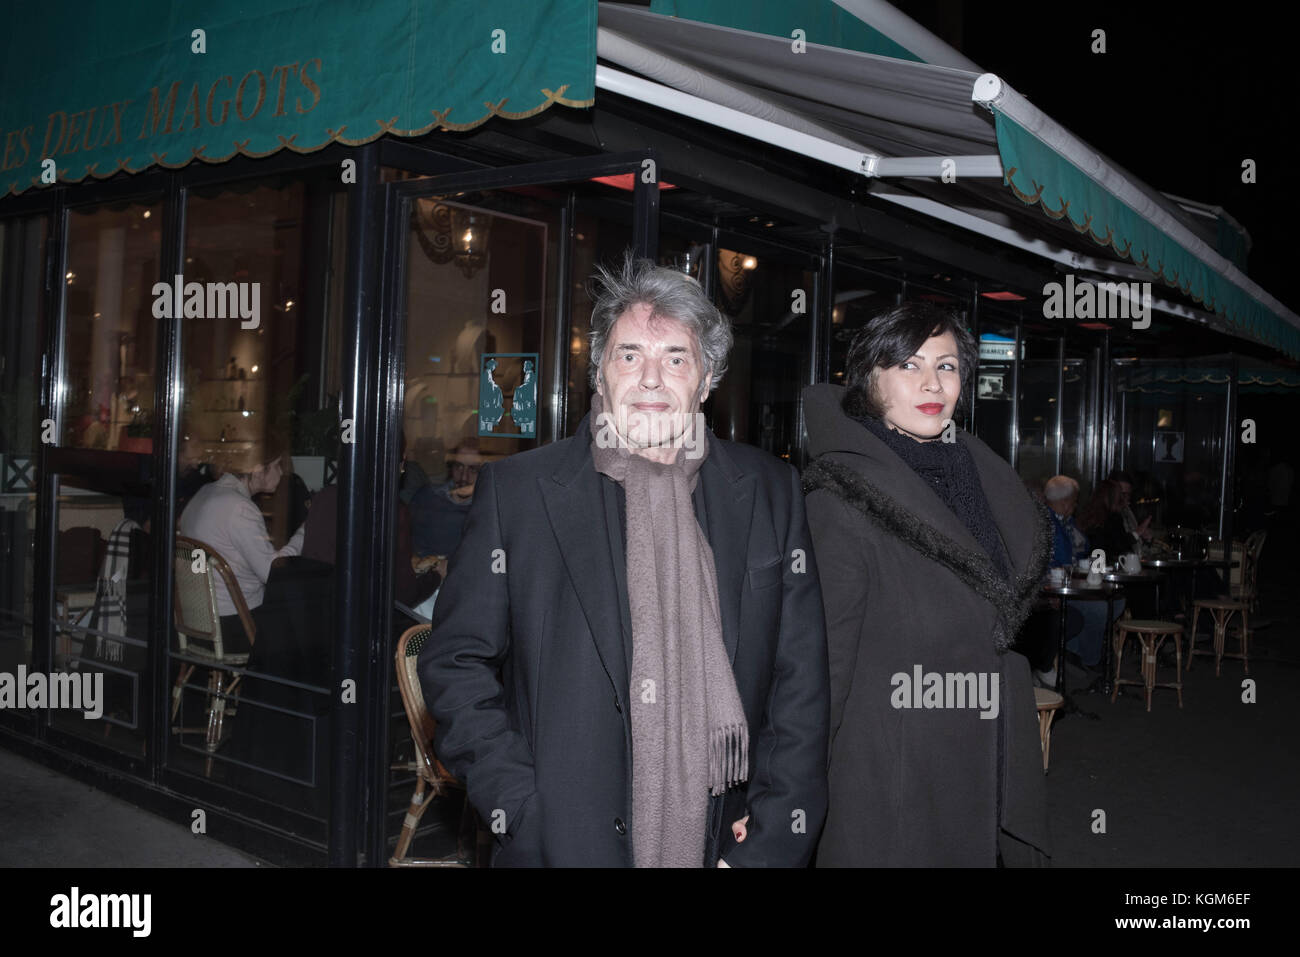 Saint-Germain-des-Prés en París - oportunidad de foto - Yves Simon cantante francesa - compañía compositora de Ameneh Moayedi artista gráfico y fotógrafo Foto de stock